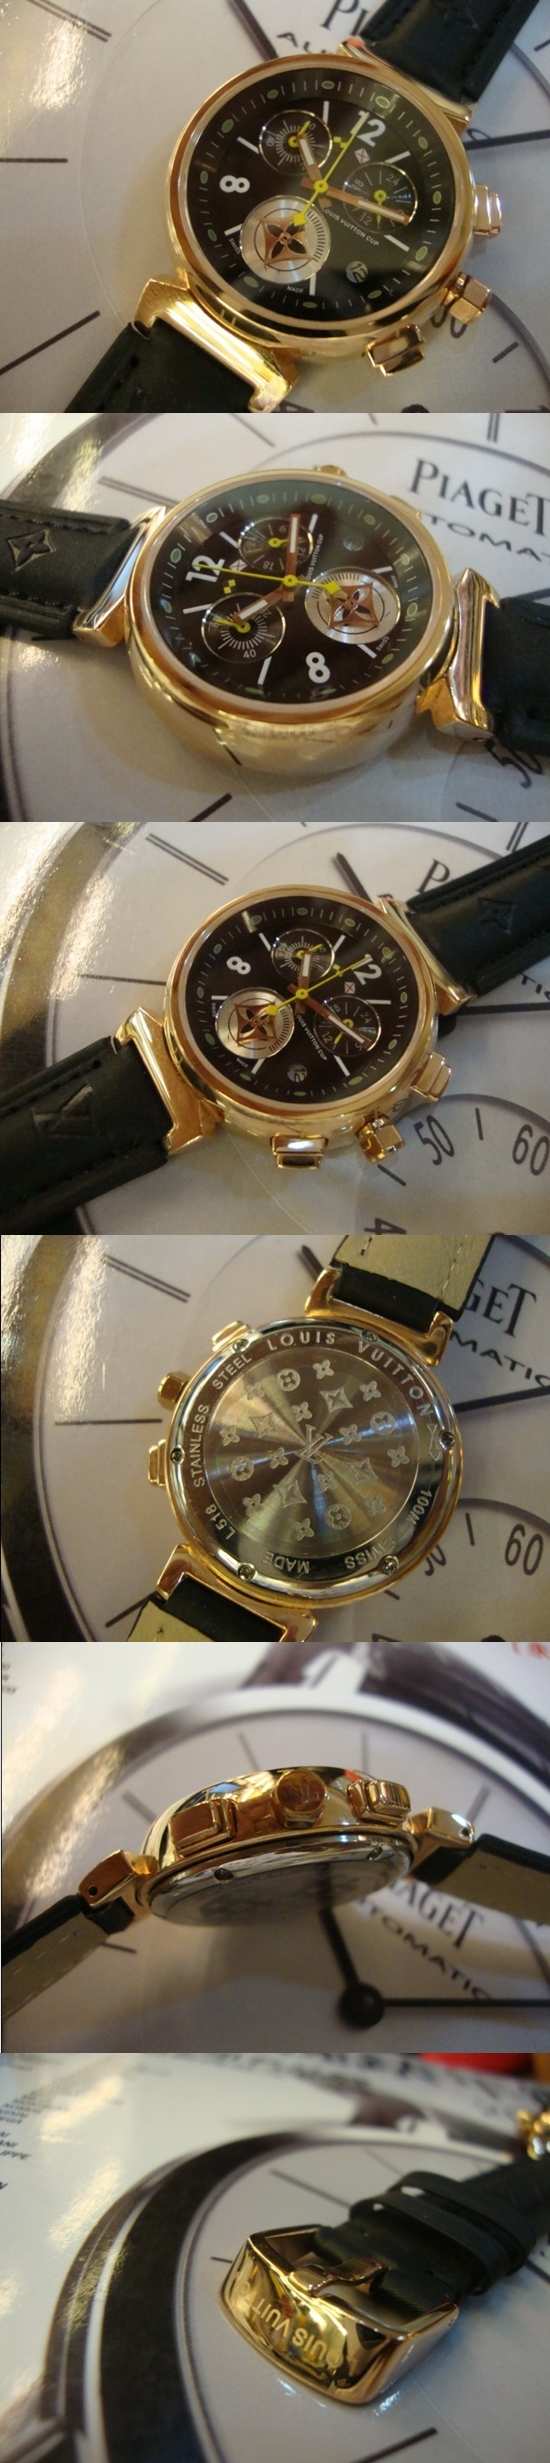 おしゃれなブランド時計がルイヴィトン-タンブール-LOUIS VUITTON-LV00024J-女性用を提供します.